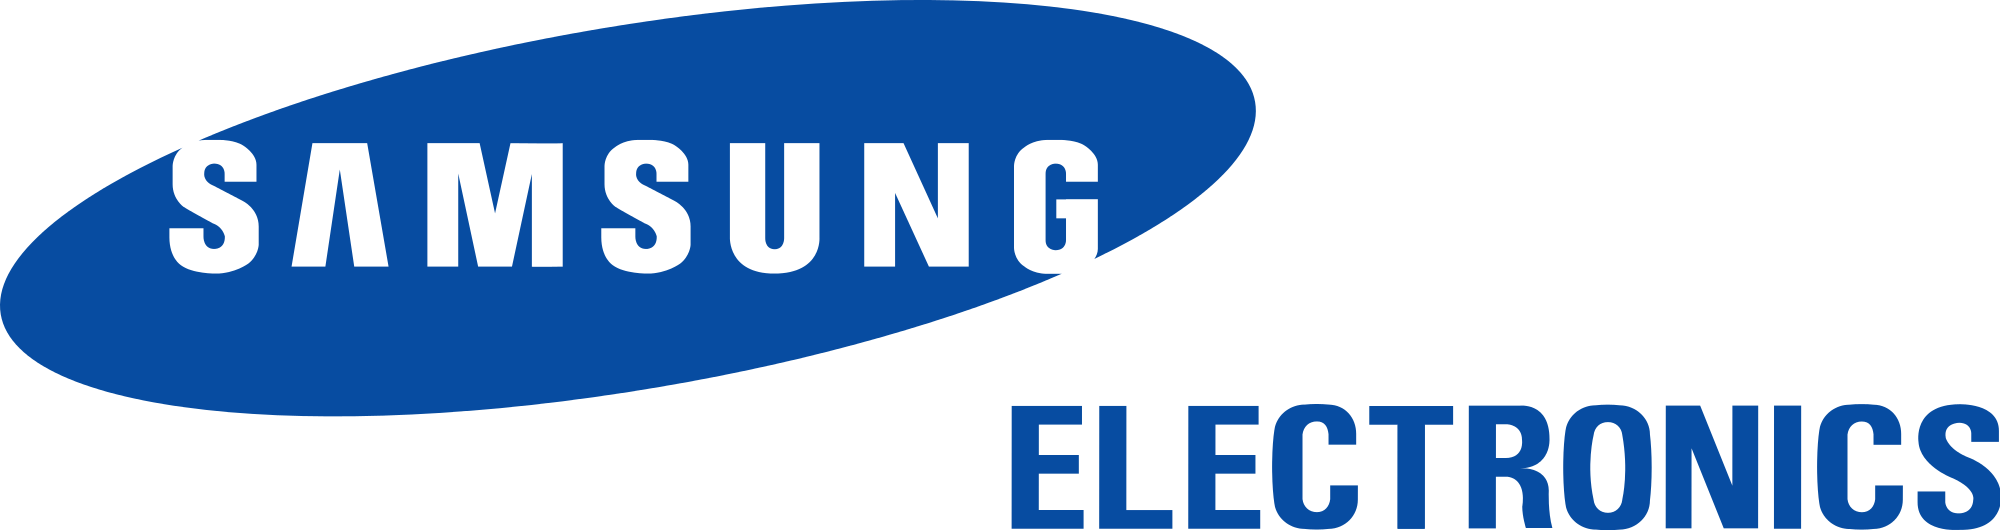 Logo của Samsung đã trở thành một biểu tượng nổi tiếng với thiết kế stylized độc đáo. Hãy xem ngay hình ảnh liên quan để khám phá thêm về nét đẹp của logo này.